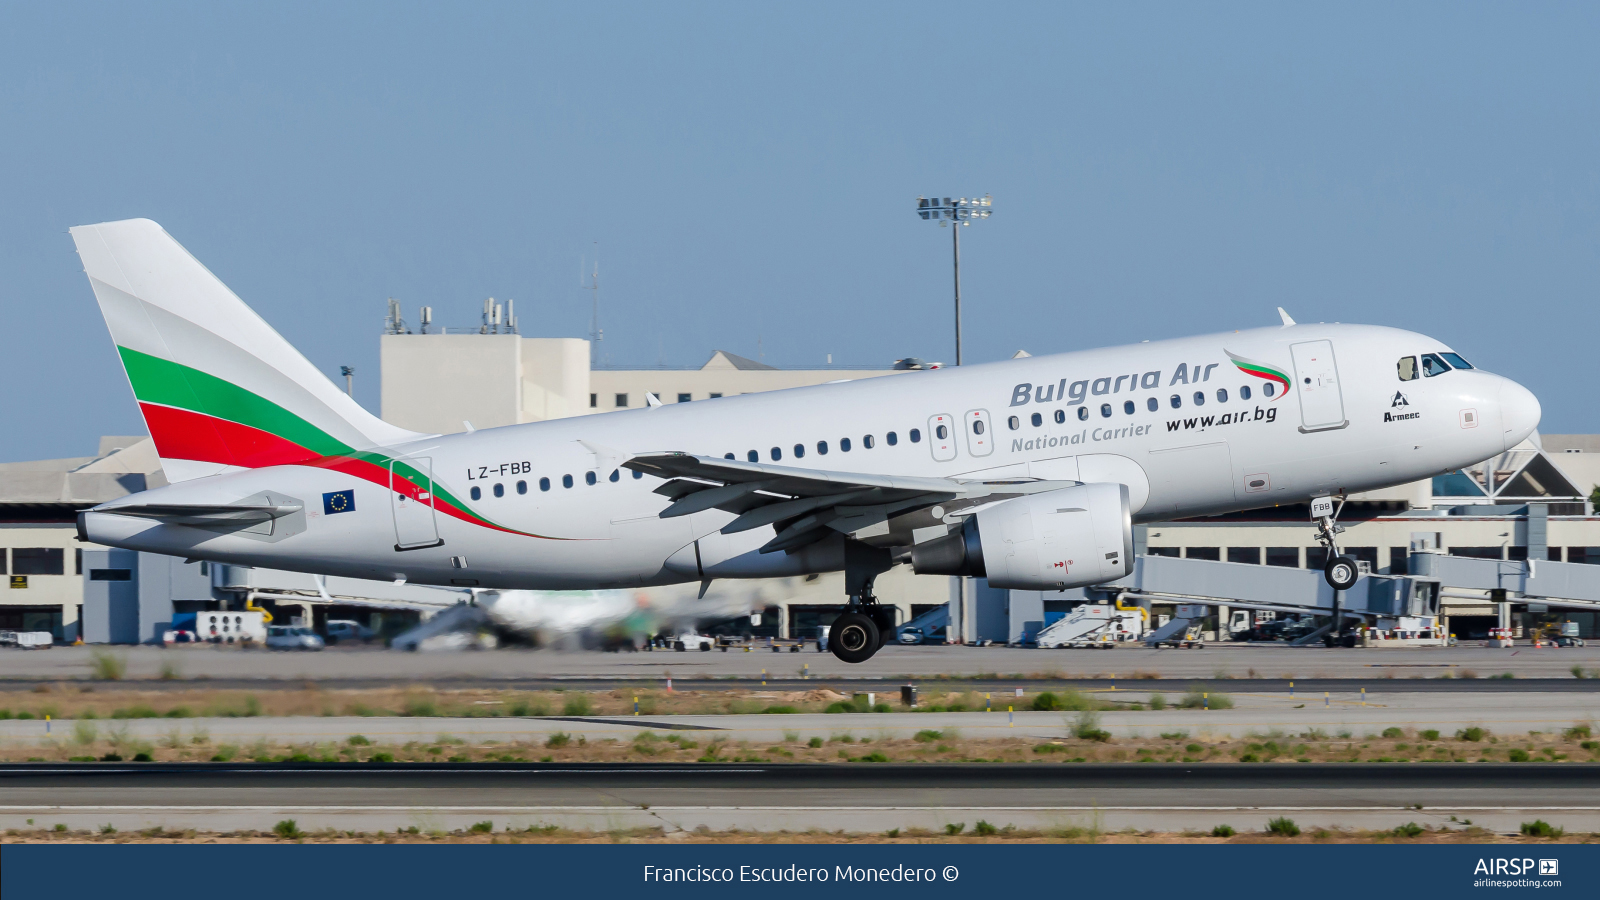 Bulgaria Air  Airbus A319  LZ-FBB